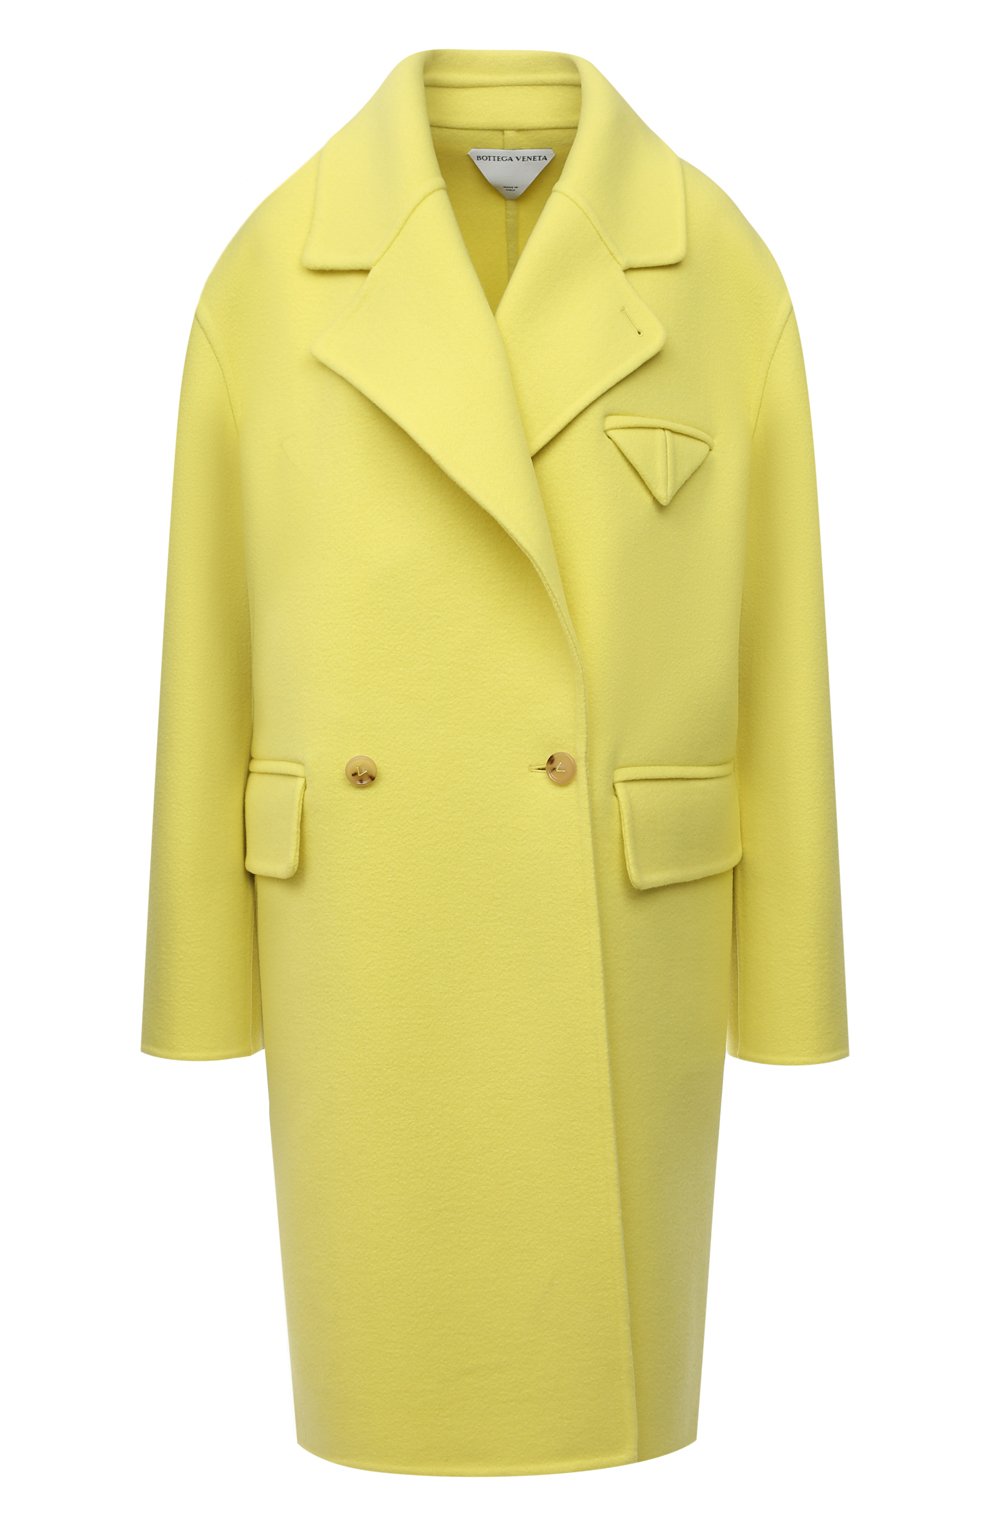 Женское кашемировое пальто BOTTEGA VENETA желтого цвета, арт. 689344/VF3W0 | Фото 1 (Материал внешний: Шерсть, Кашемир; Рукава: Длинные; Длина (верхняя одежда): До колена; 1-2-бортные: Однобортные; Стили: Кэжуэл)